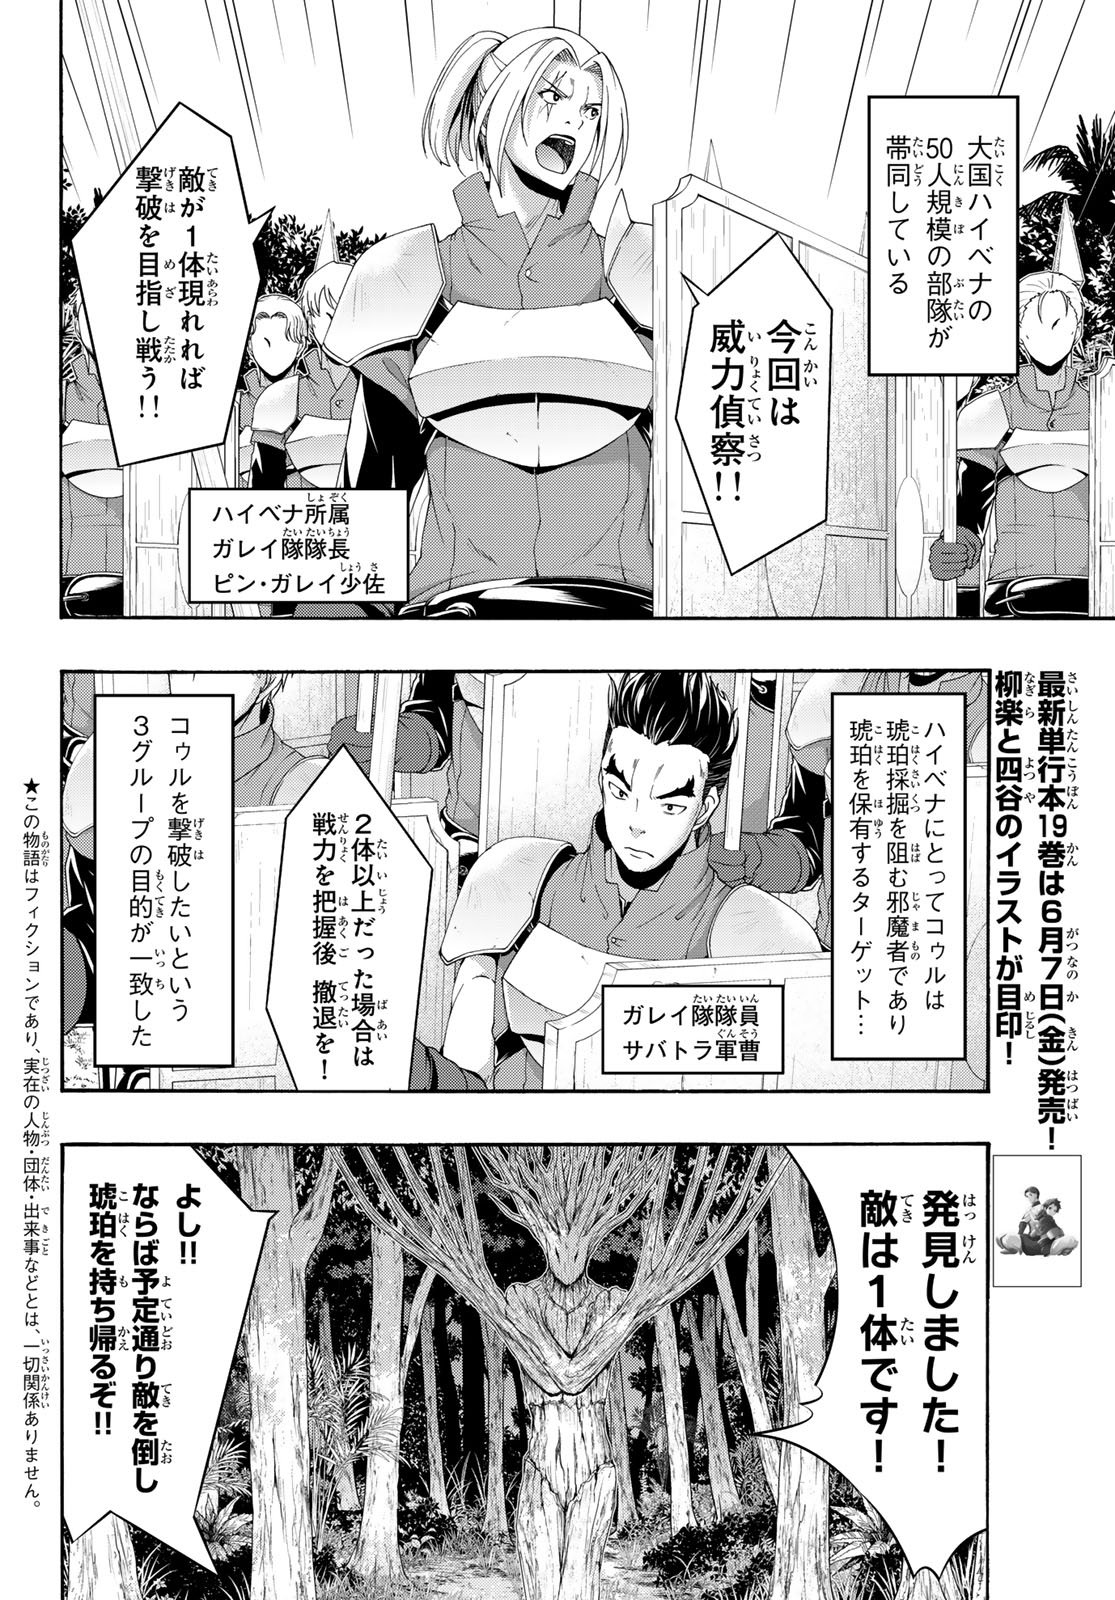 100-man no Inochi no Ue ni Ore wa Tatte Iru - Chapter 95 - Page 2